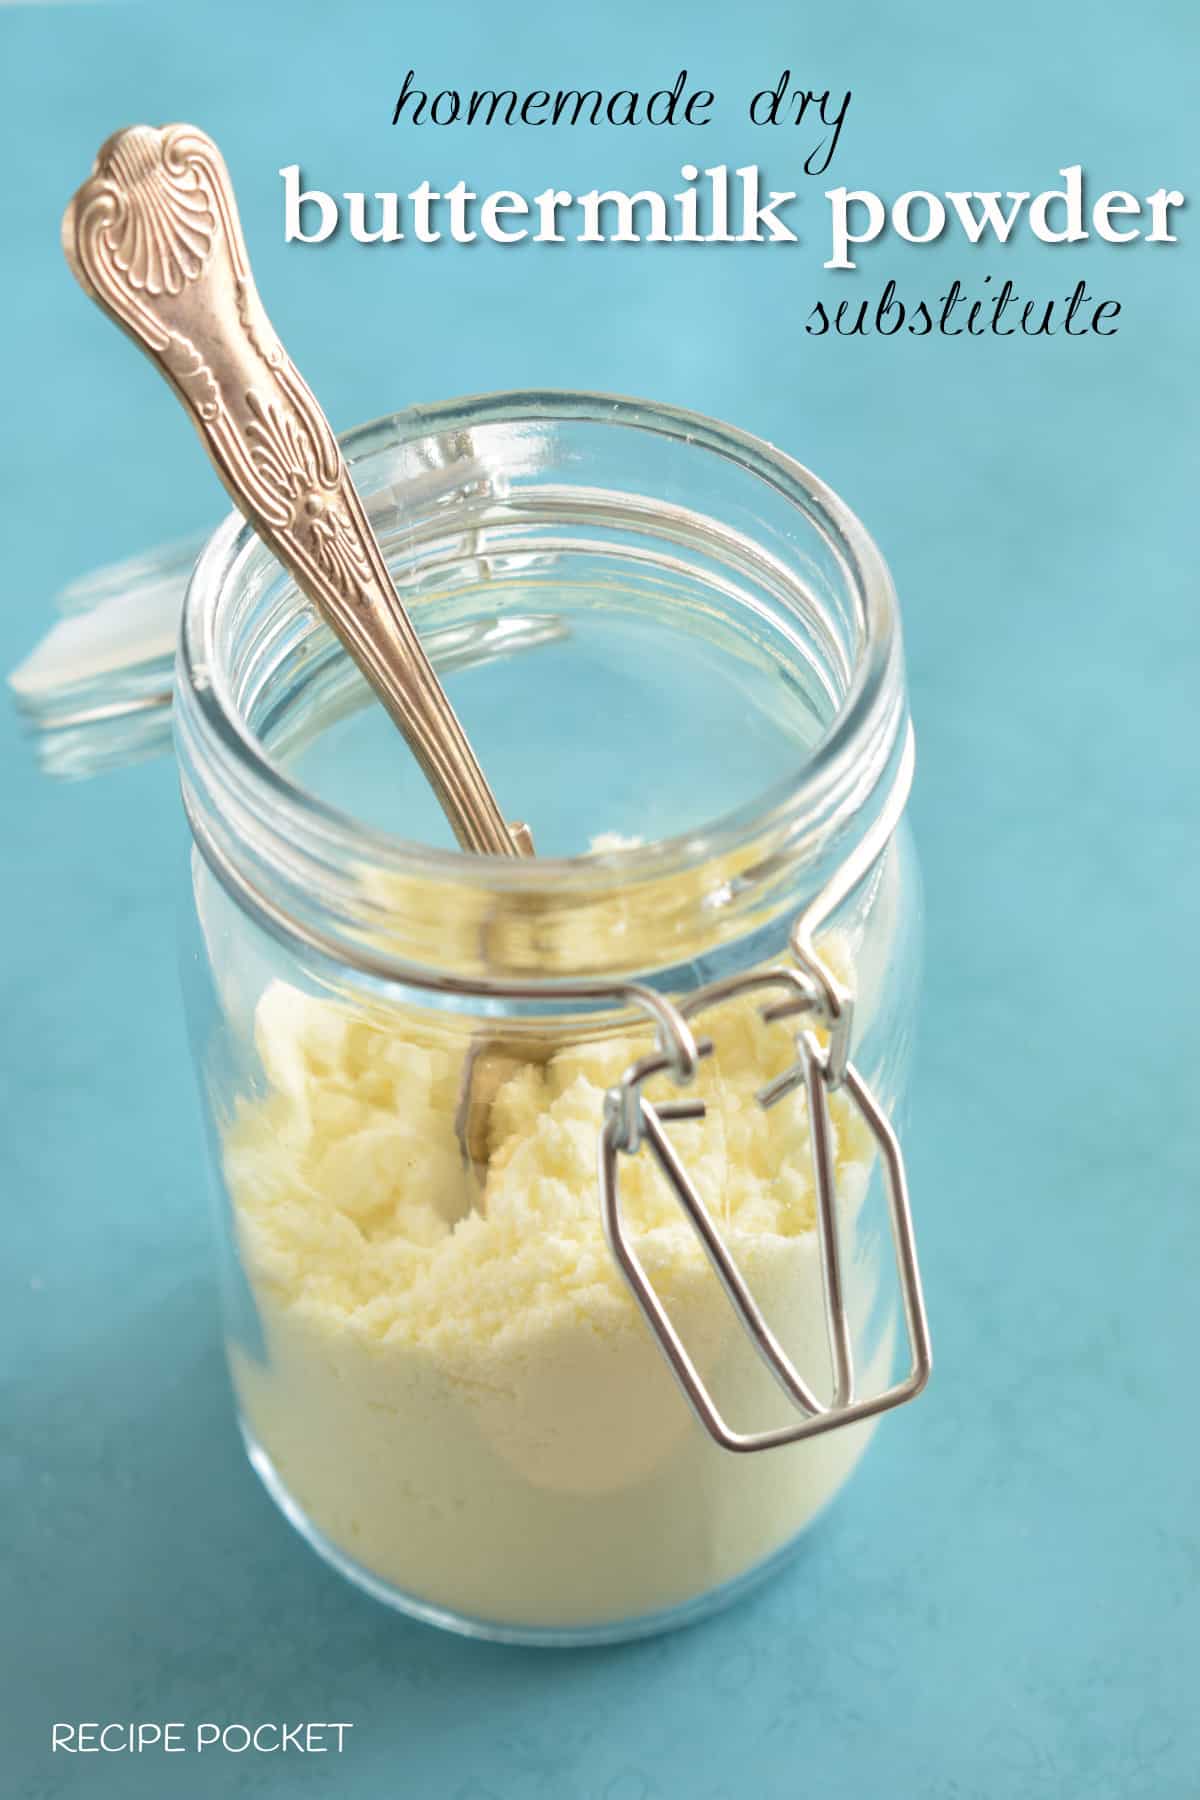 Dry buttermilk powder substitute in a glass jar.